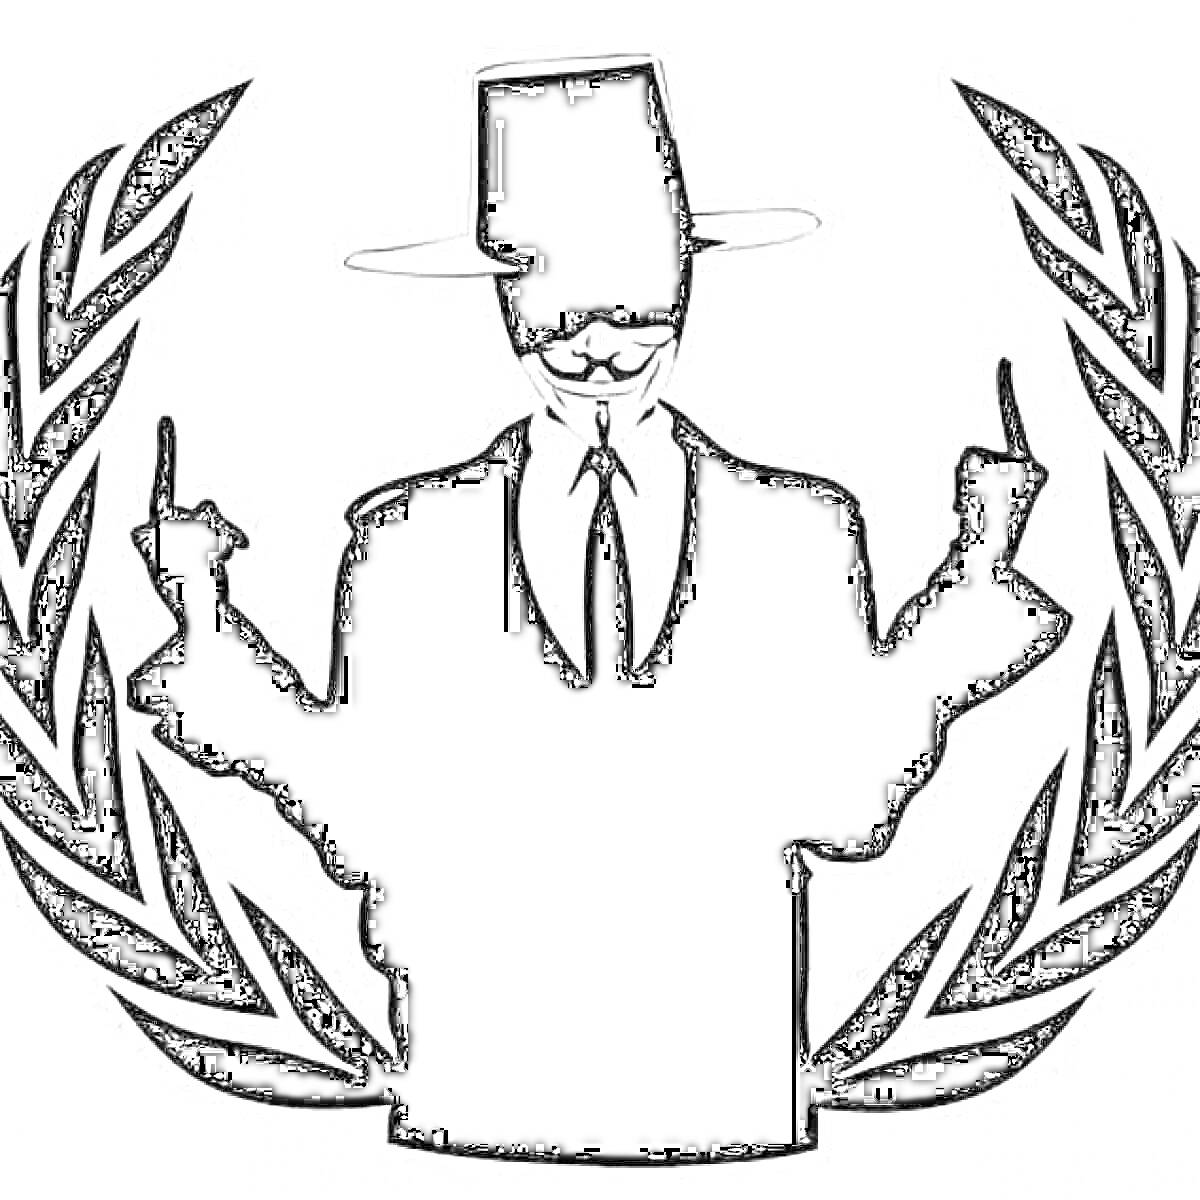 Силуэт человека в маске Гая Фокса в шляпе и костюме с поднятыми пальцами внутри лаврового венка